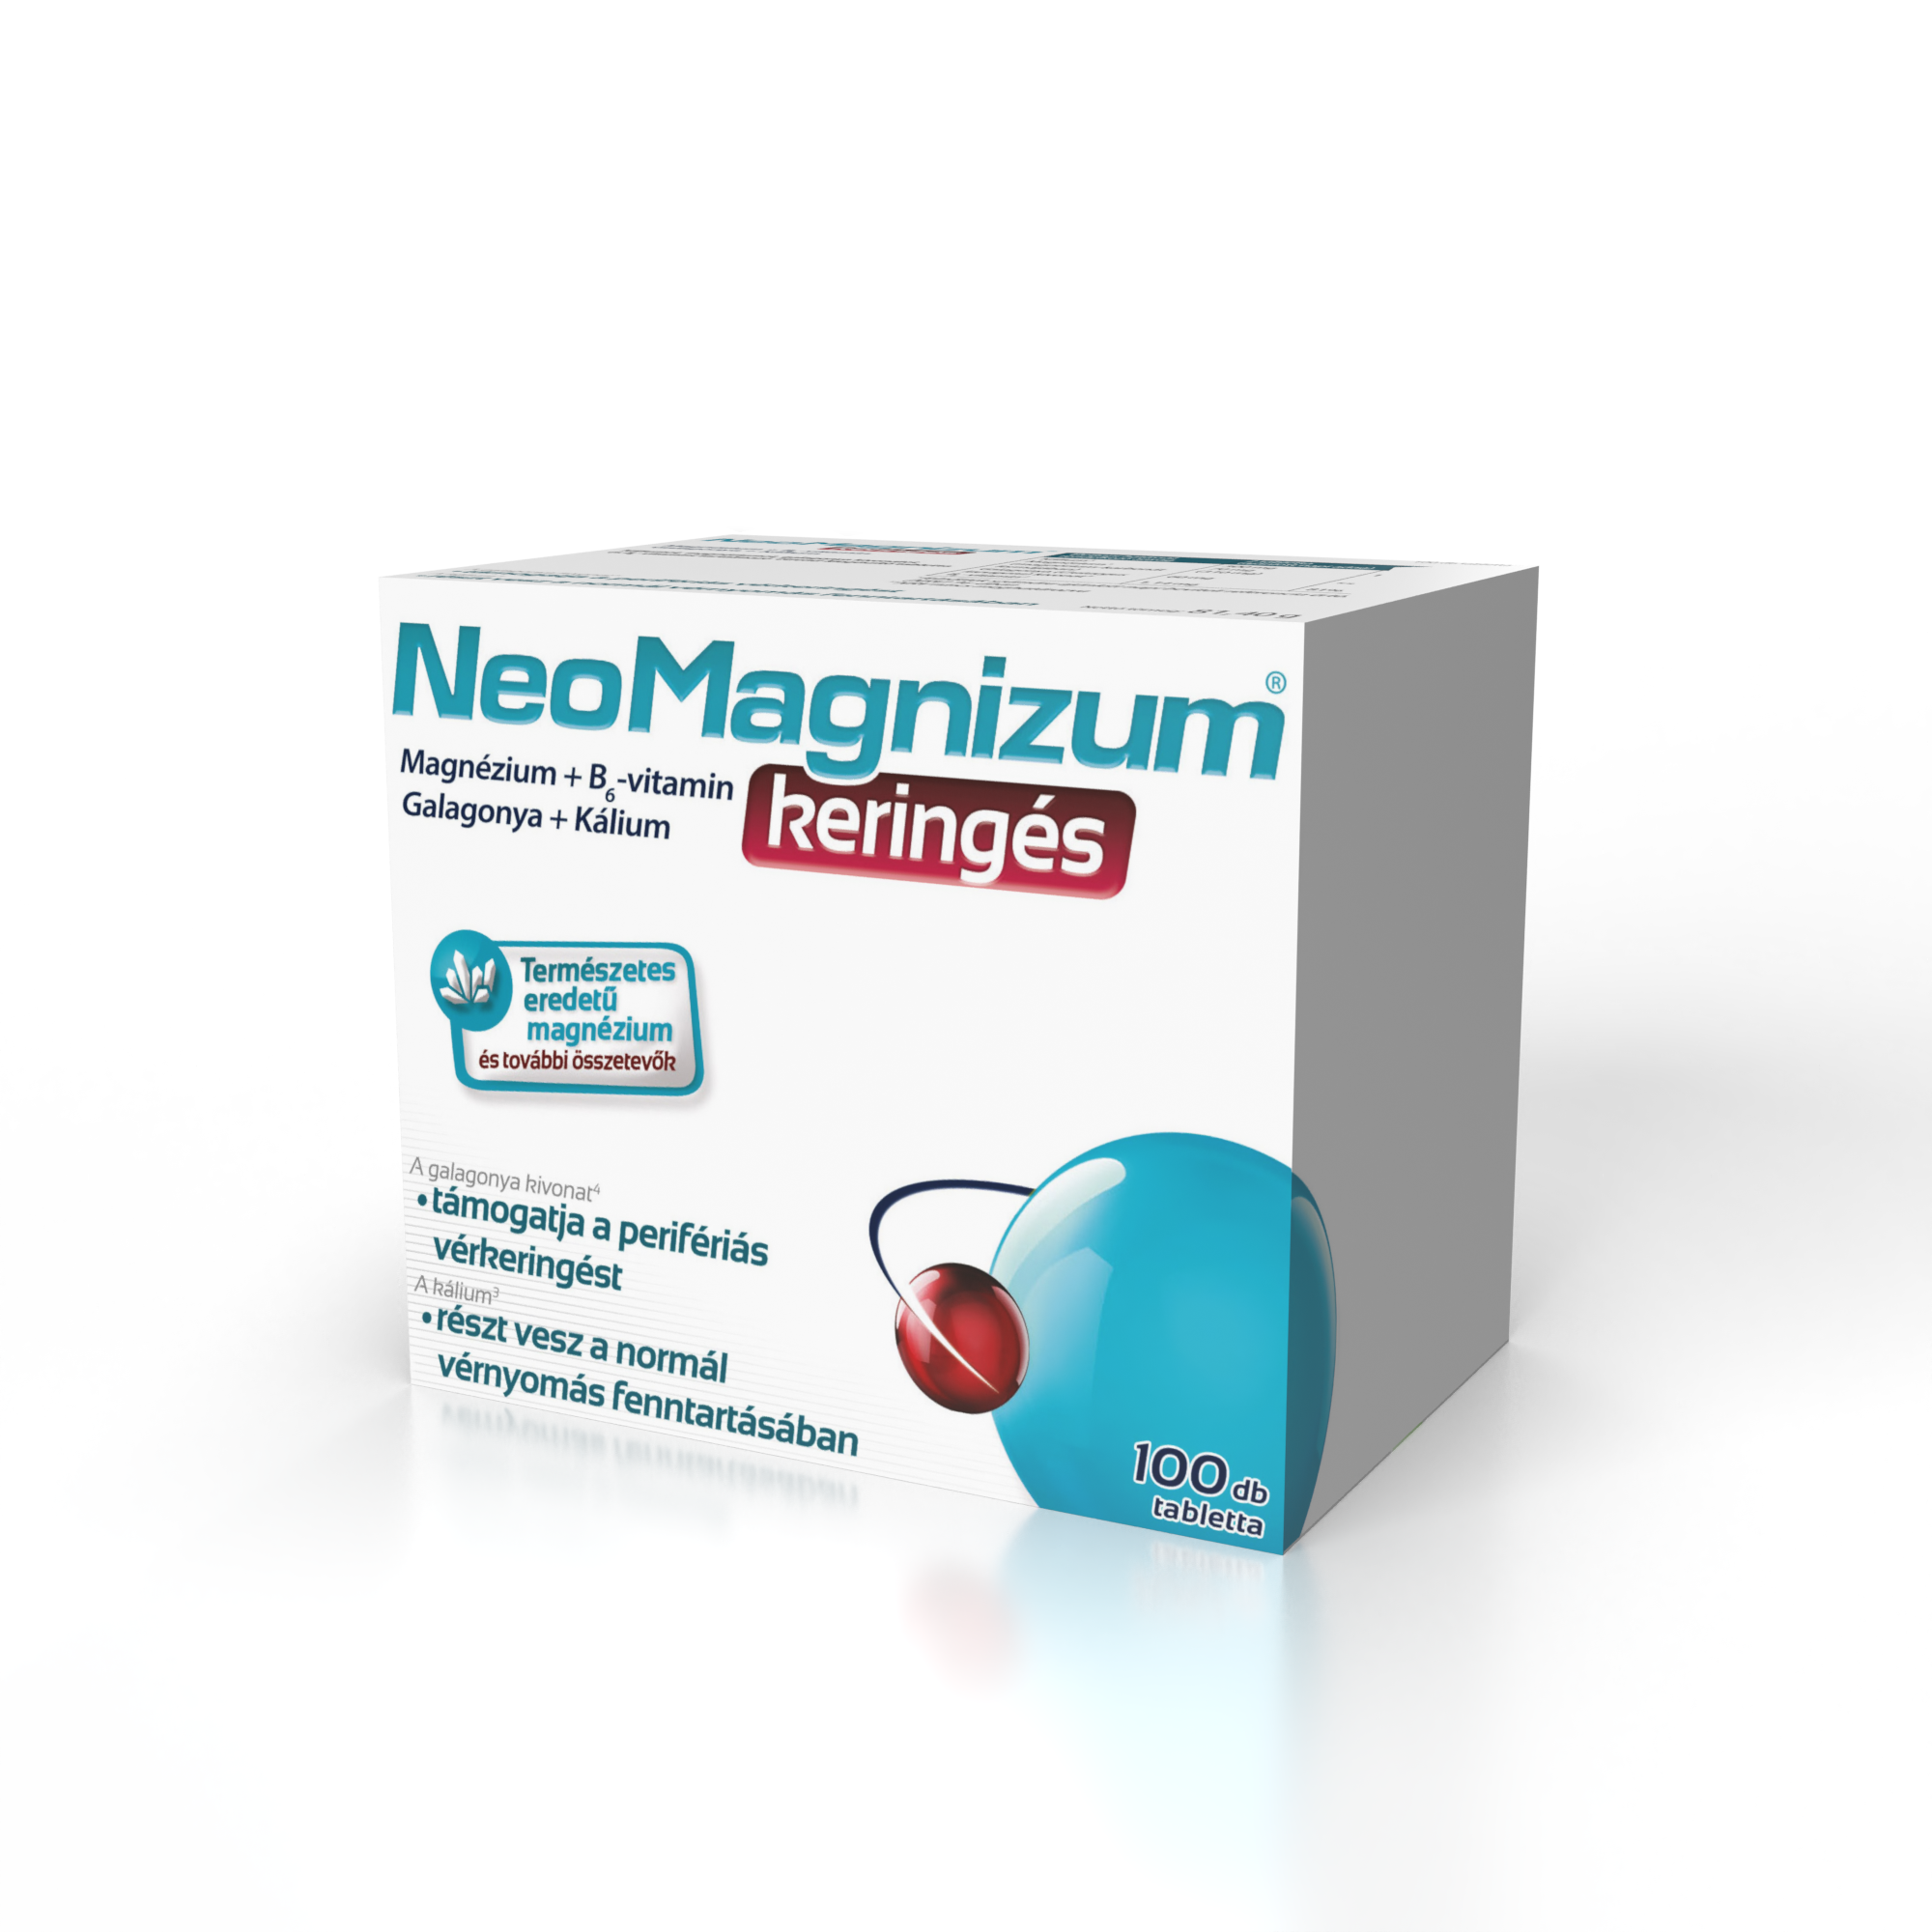 NeoMagnizum keringés káliumot, magnéziumot, galagonya kivonatot és B6-vitamint tartalmazó tabletta